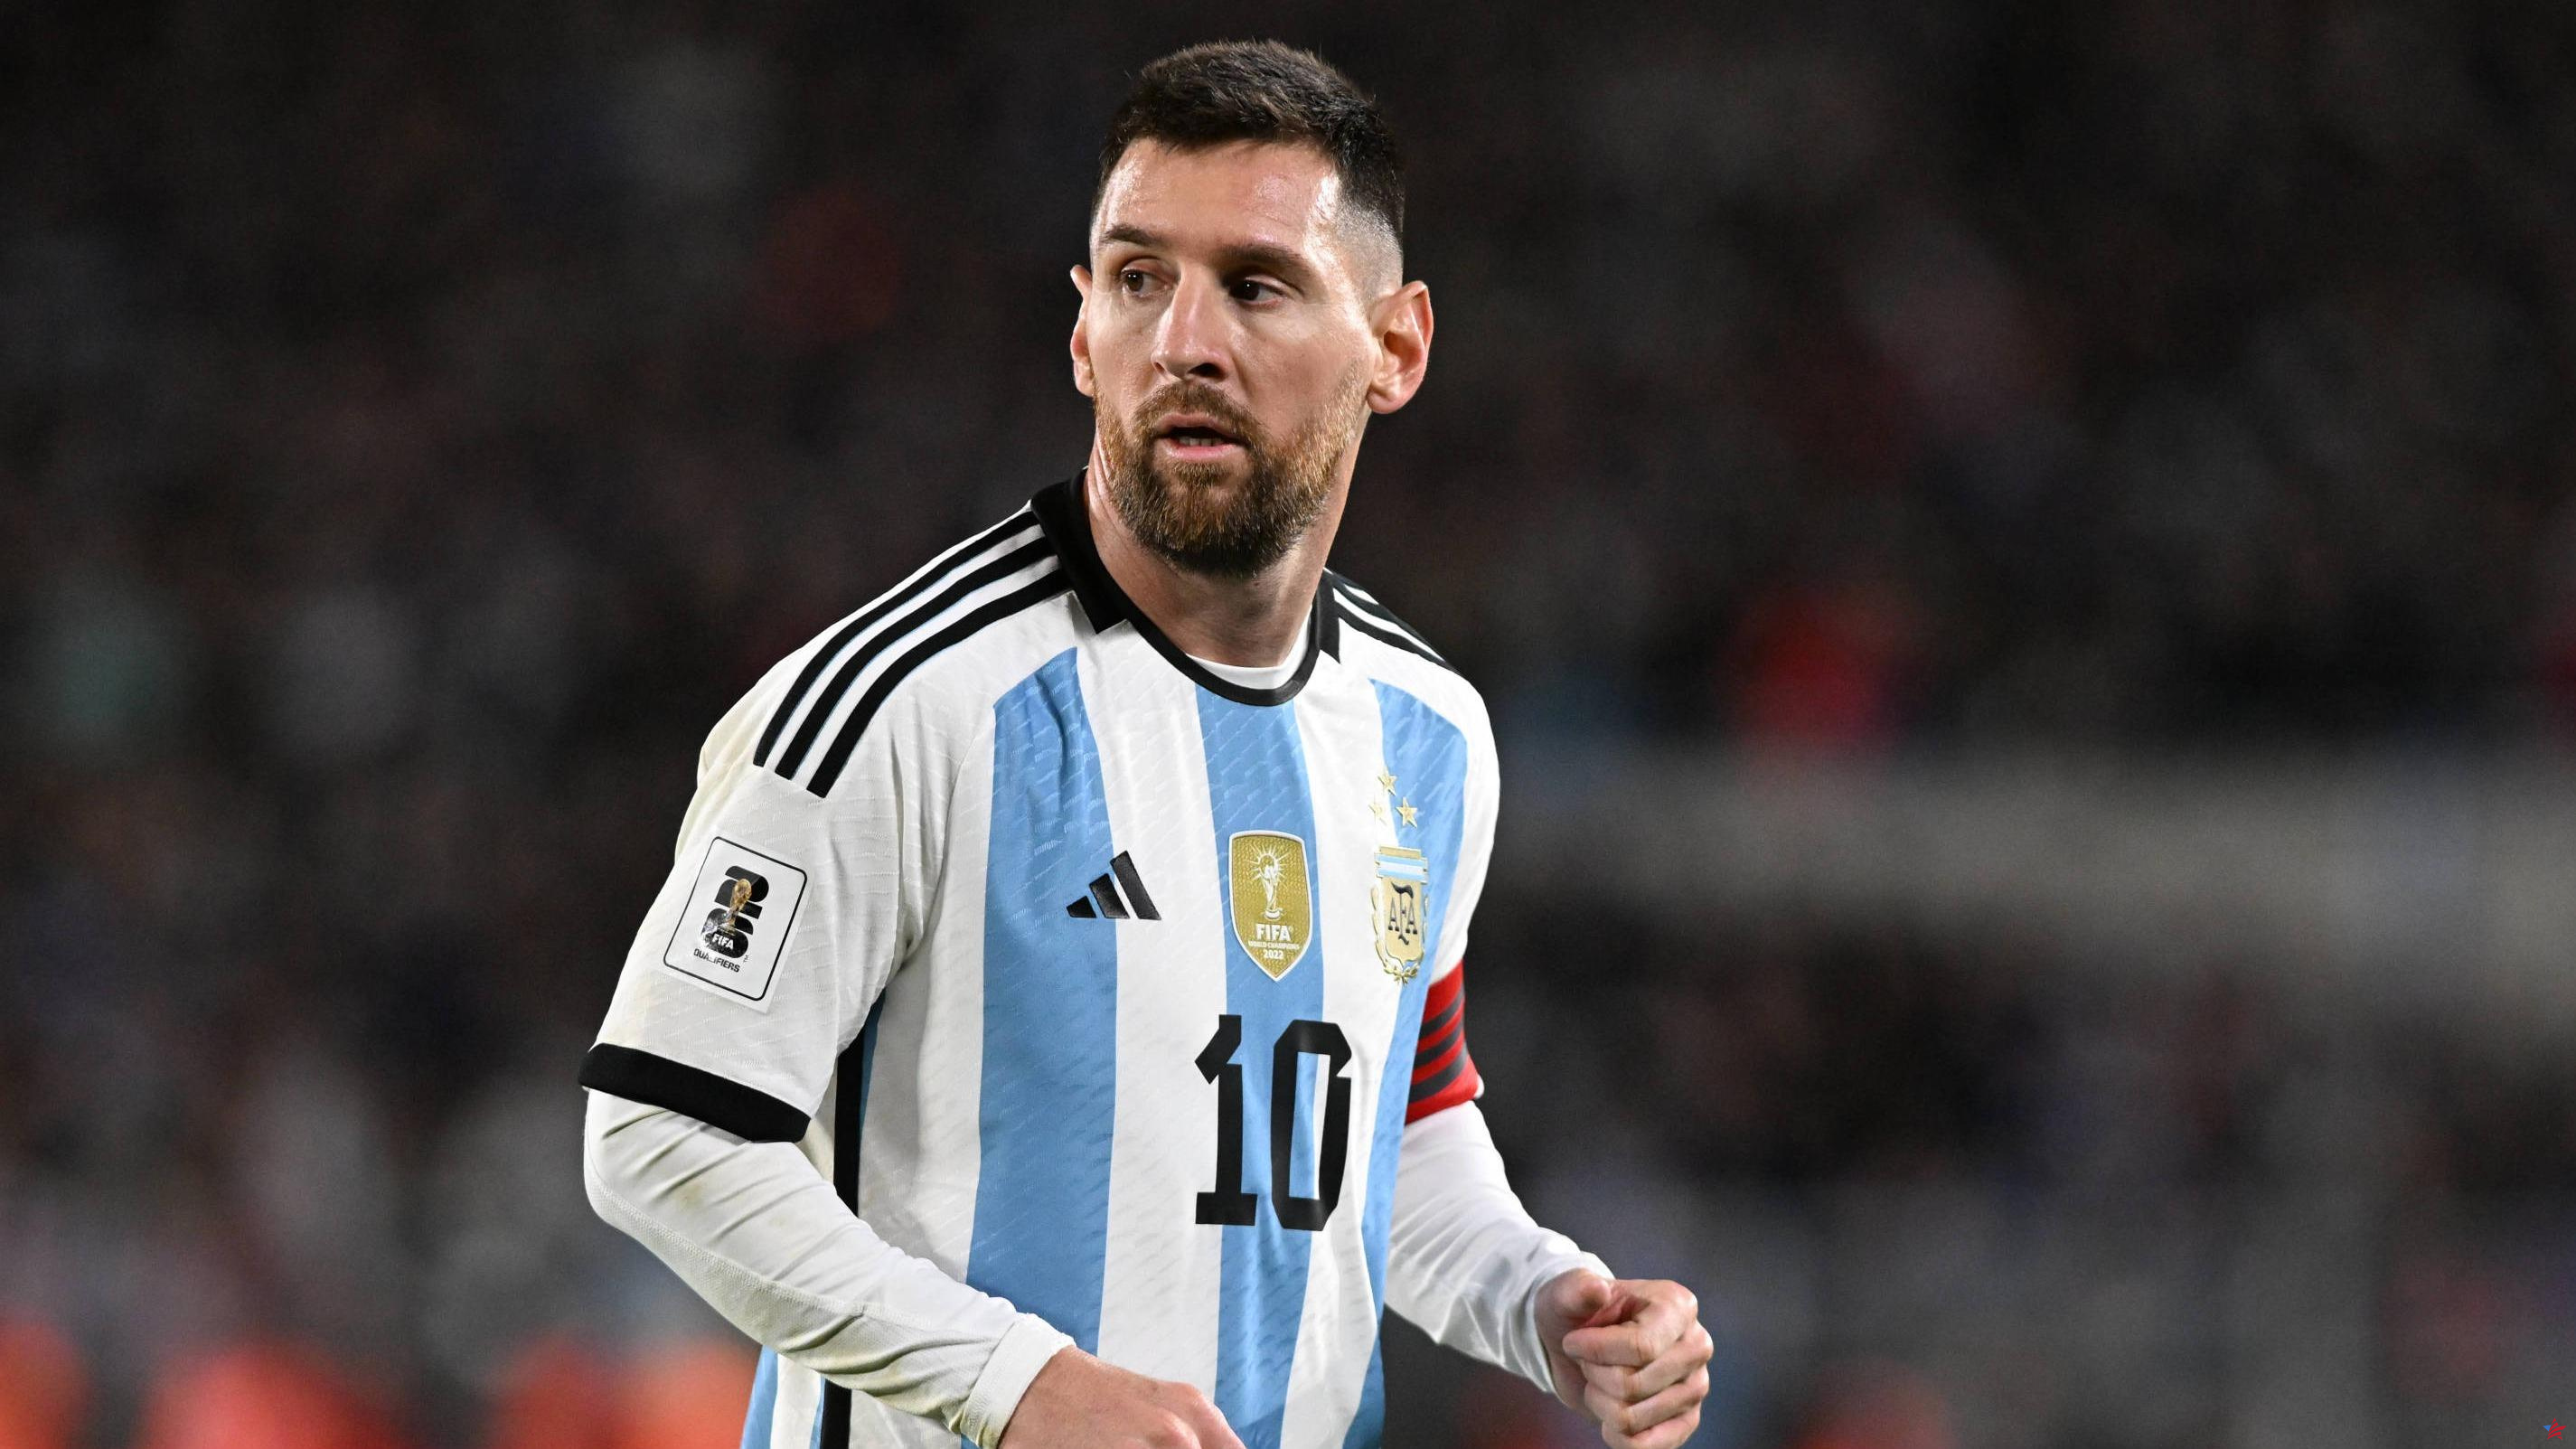 Juegos Olímpicos París 2024: Messi tiene “la puerta abierta” para jugar con Argentina, anuncia el técnico